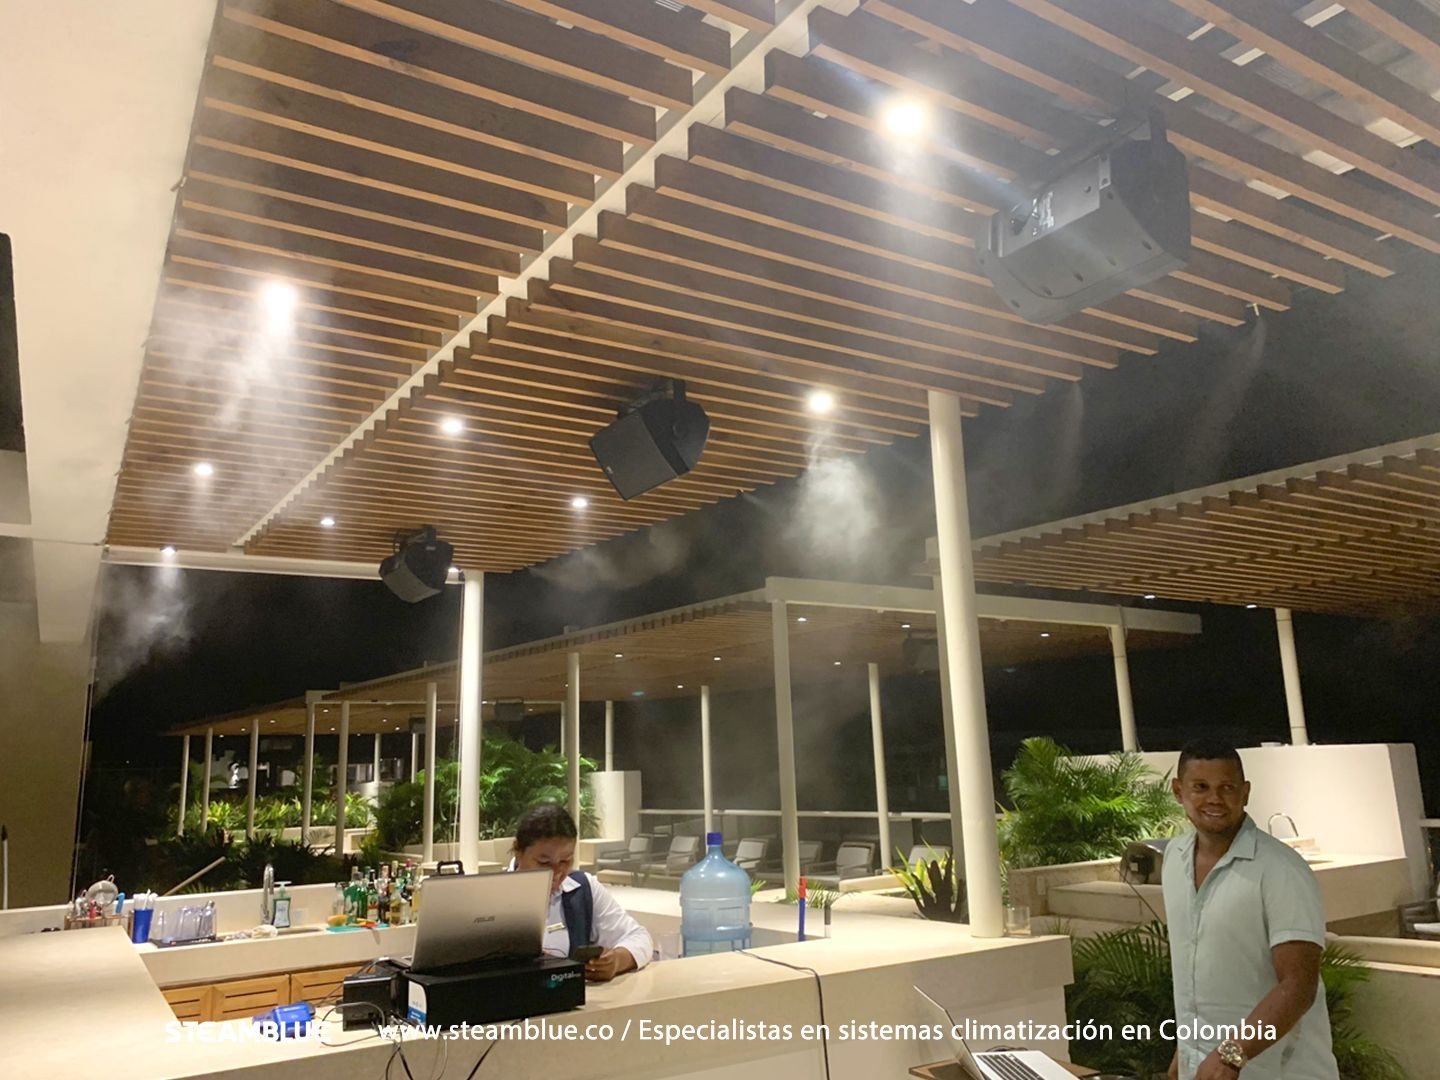 Climatizacion de exteriores con nebulizadores de agua en restaurantes cartagena4